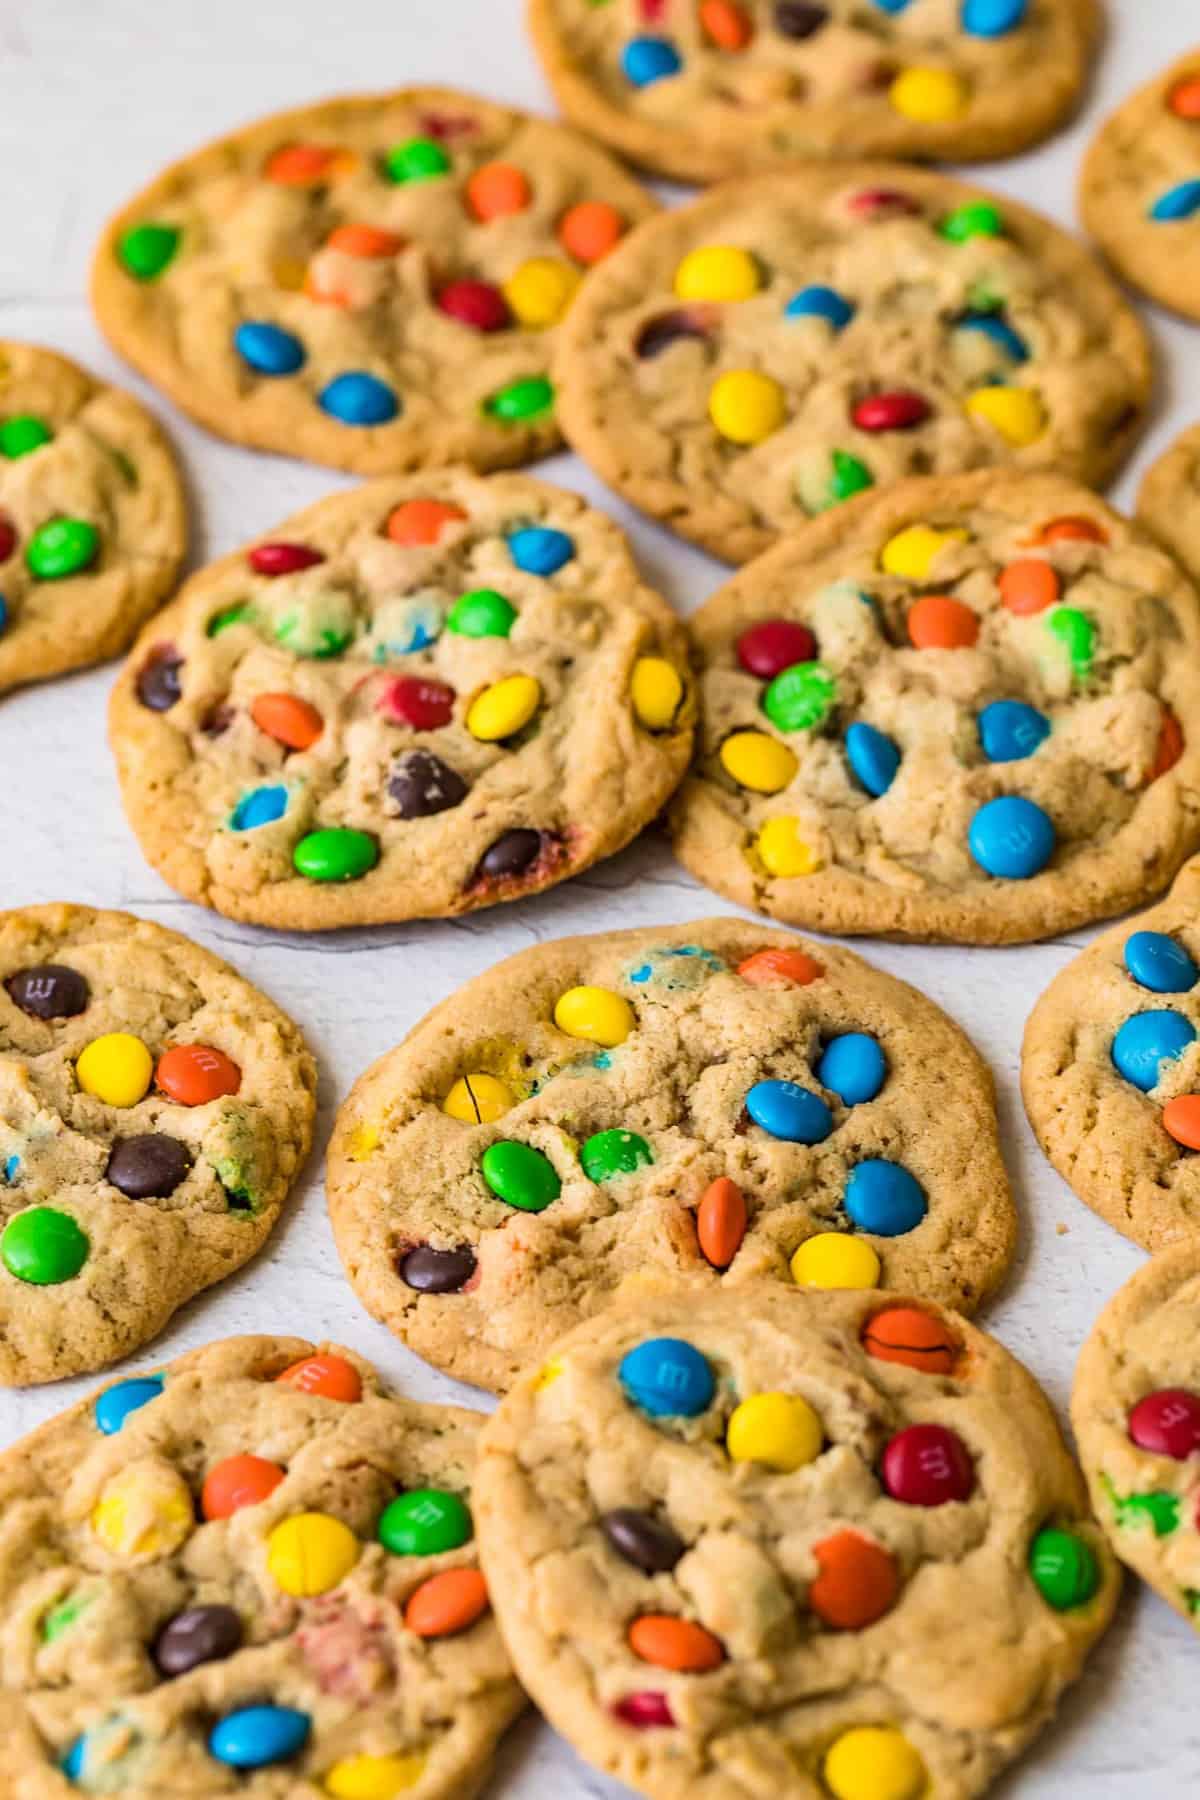 https://www.thecookierookie.com/wp-content/uploads/2019/09/mm-cookies-recipe-1-of-7.jpg